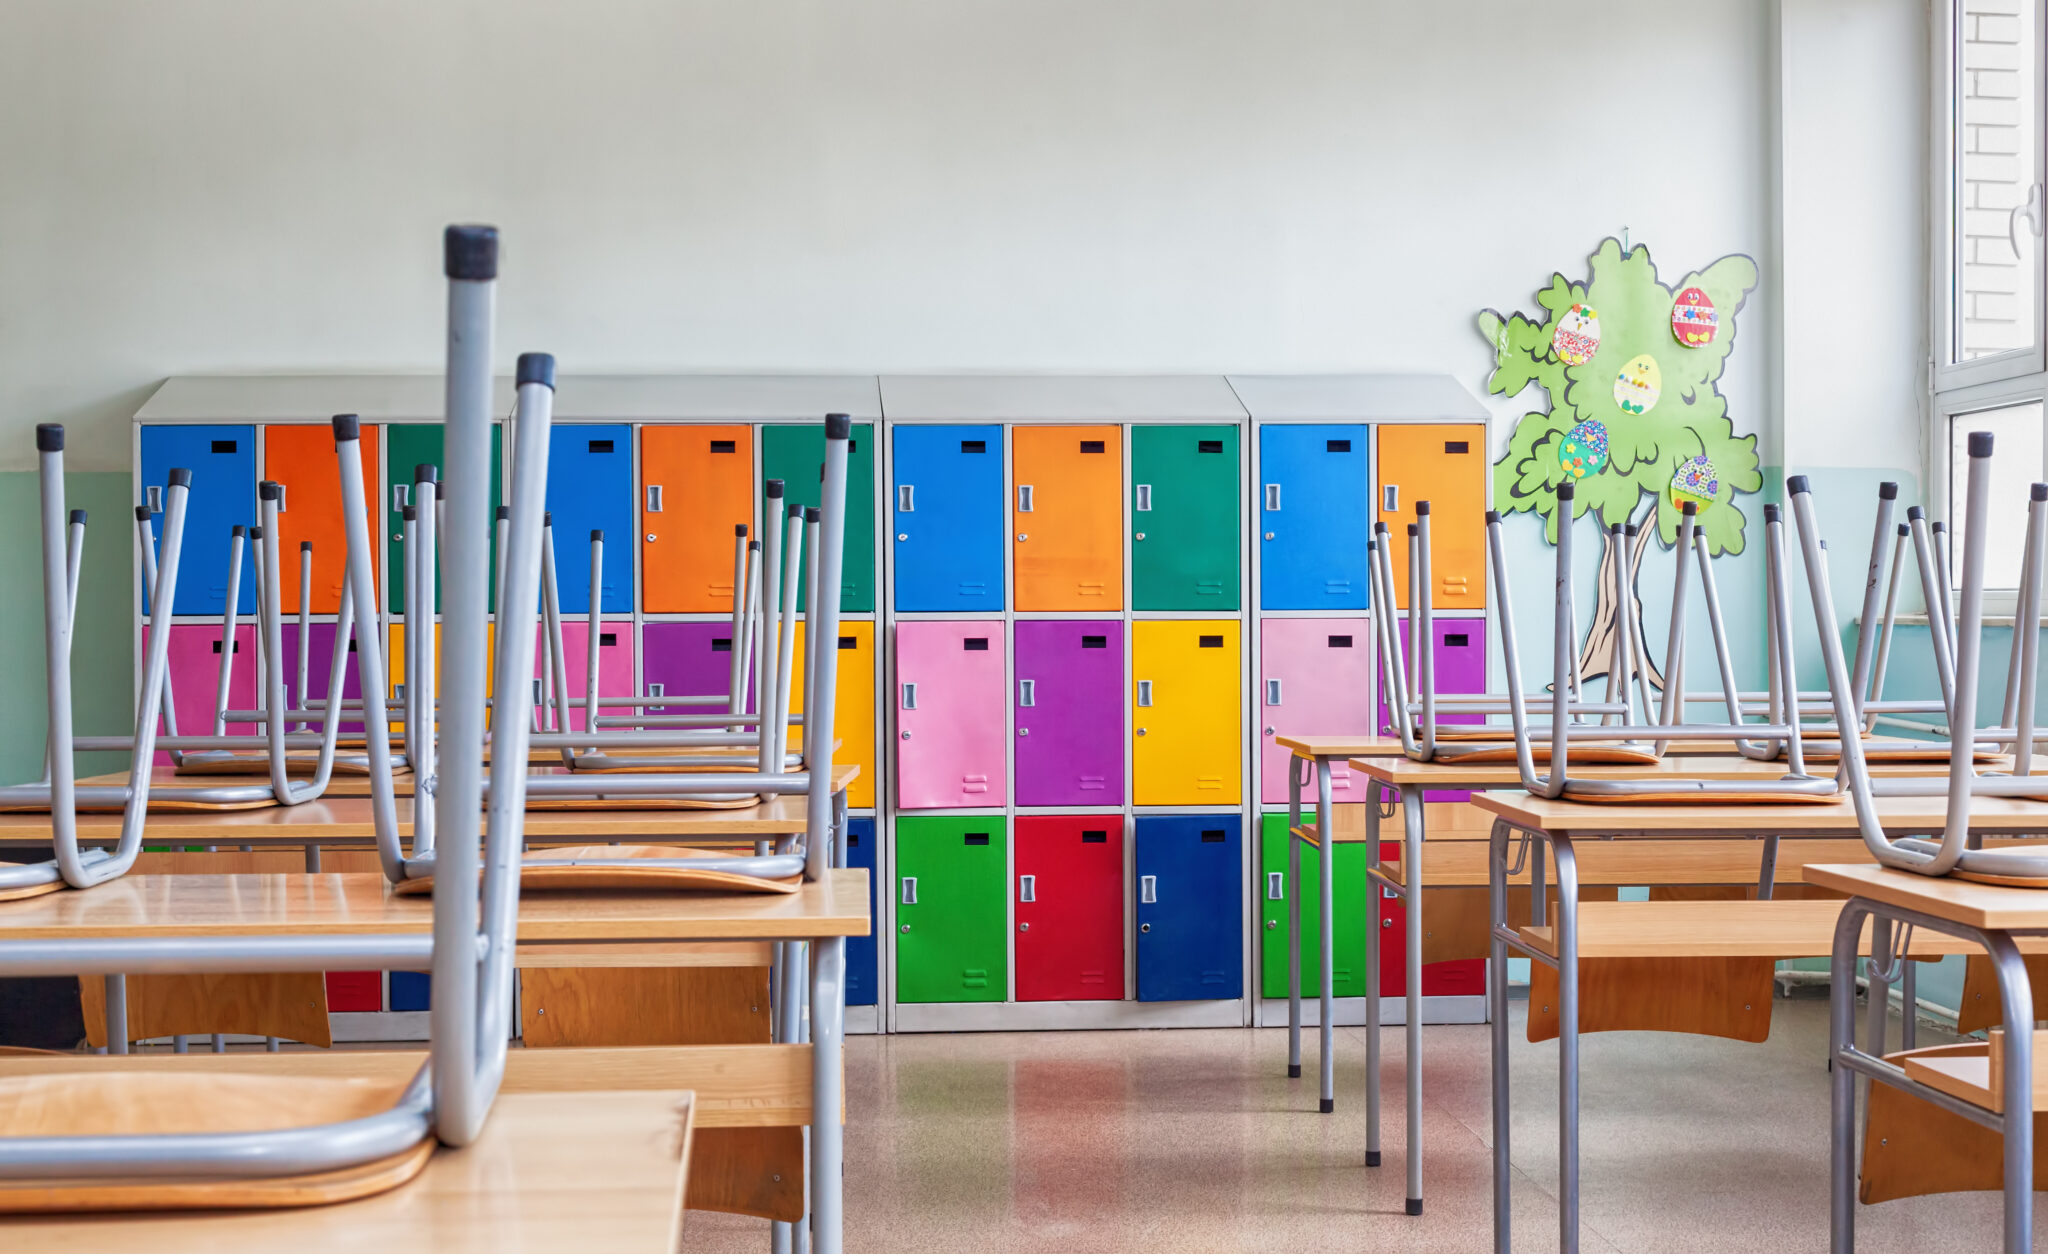 Allègement cartable scolaire : les élèves auront des casiers individuels dans les écoles